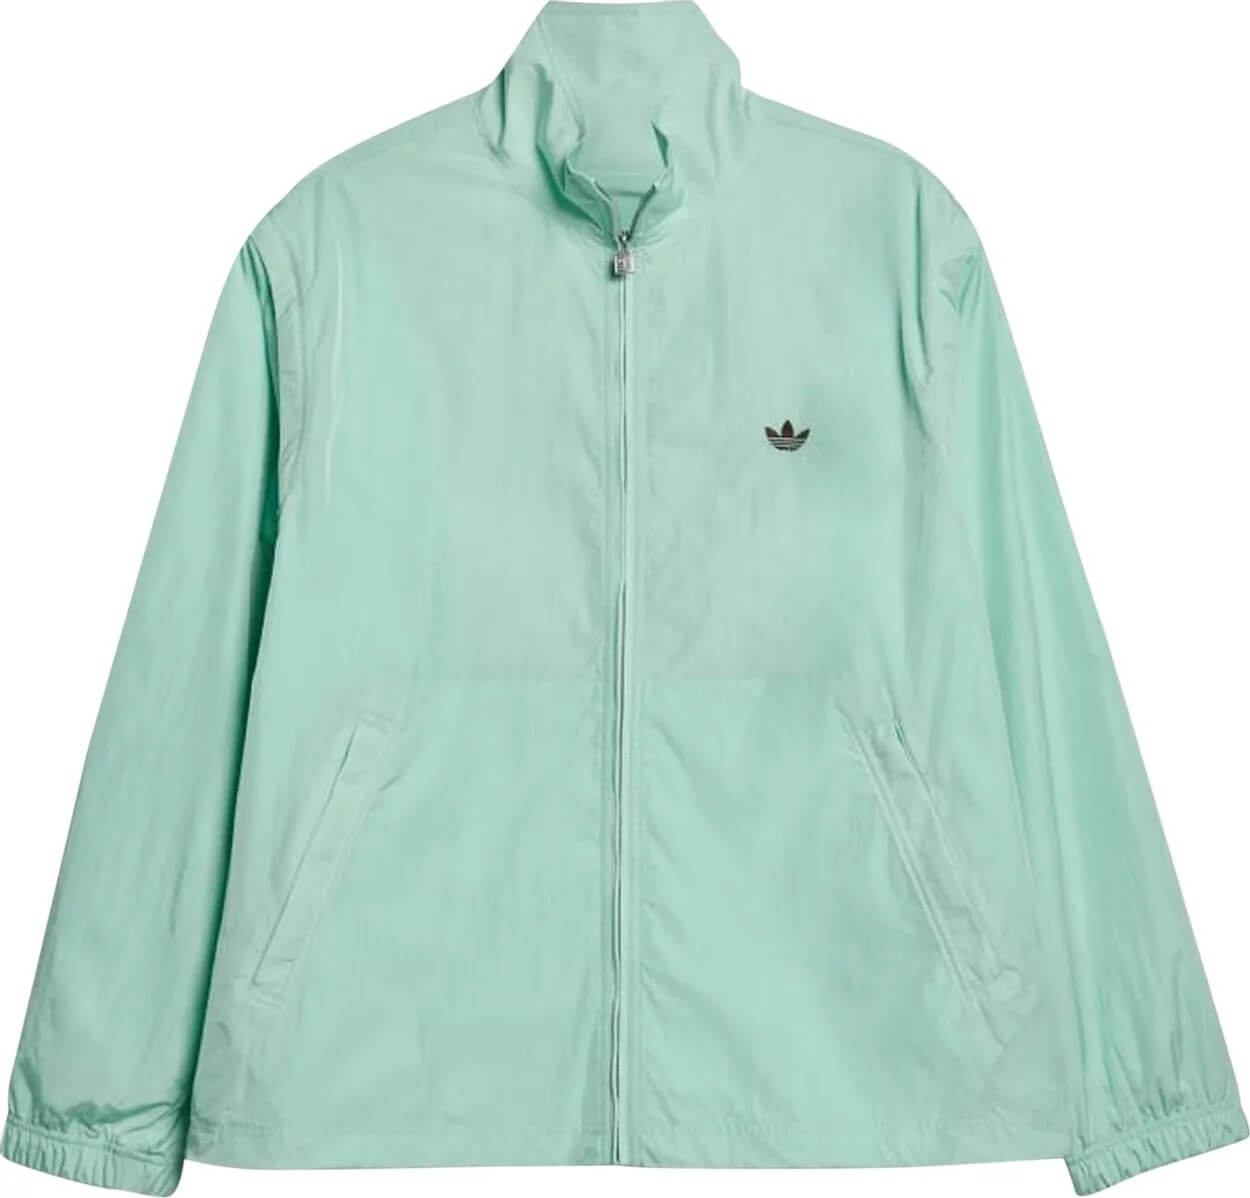 Куртка-анорак Adidas x Wales Bonner Nylon, терракотовый